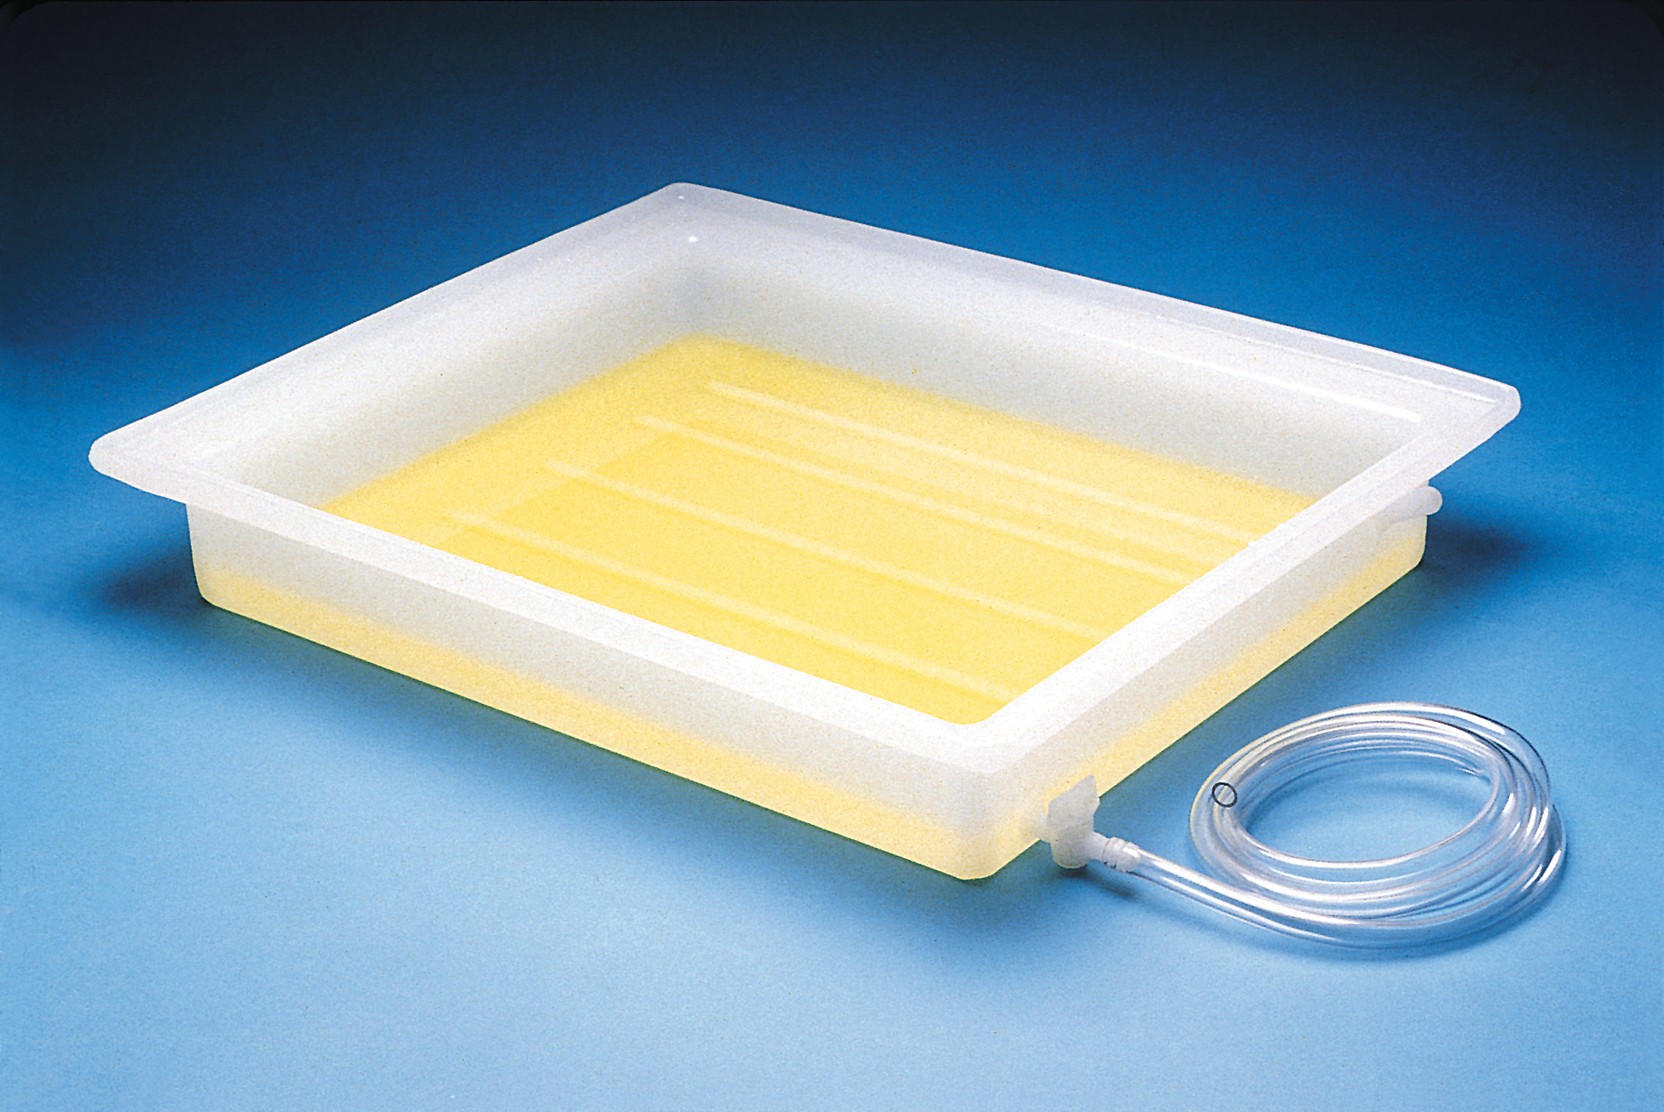 SP Bel-Art Electrophoresis Fixing Tray; Plastic, 21½ x 25½ x 4 in.